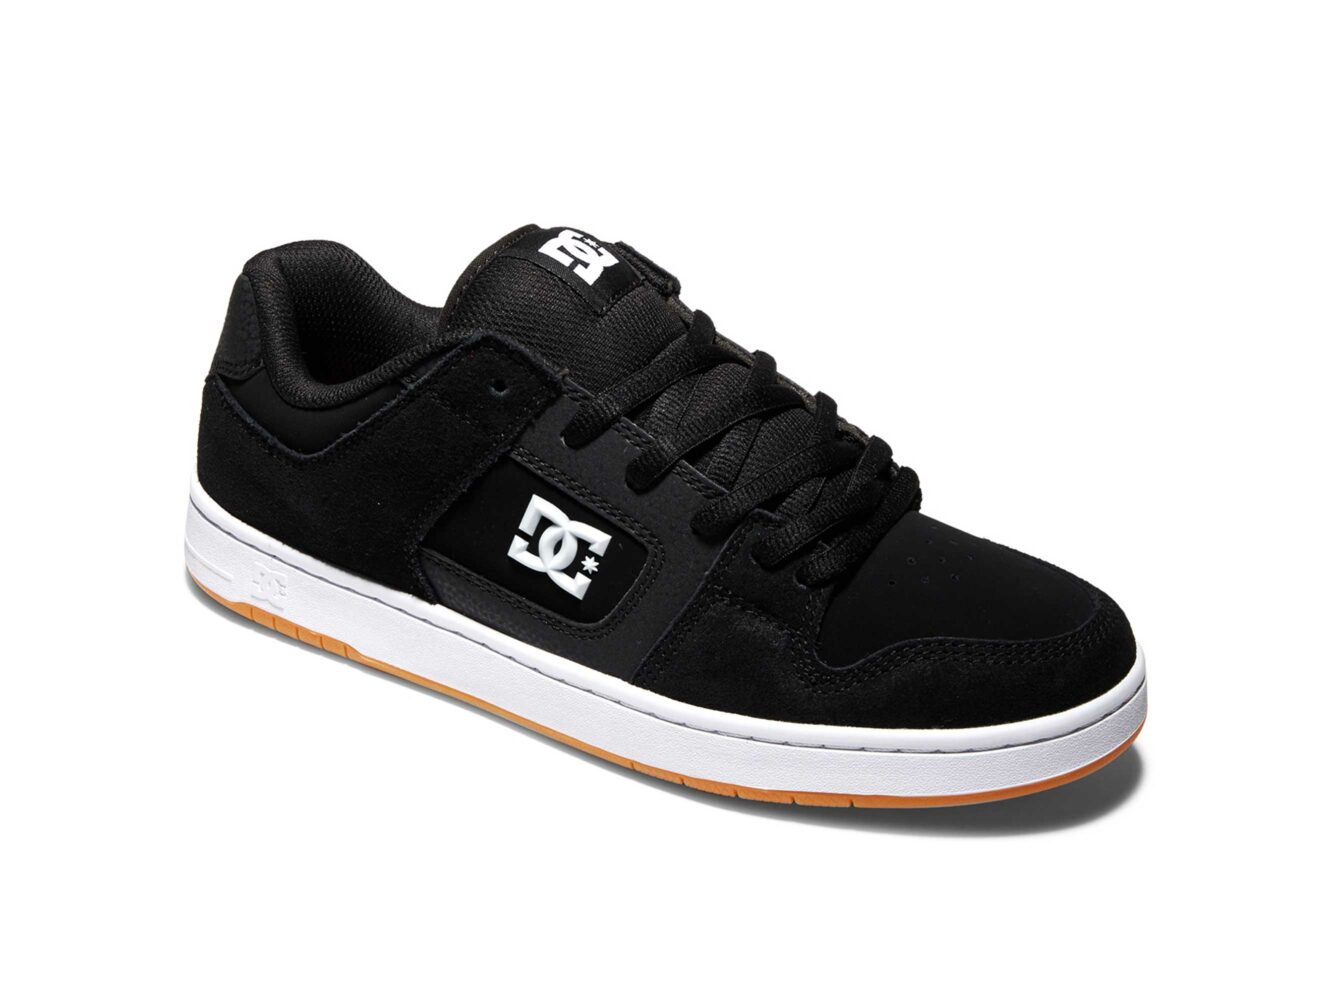 DC manteca 4 skate shoes adys100766_bw6 купить